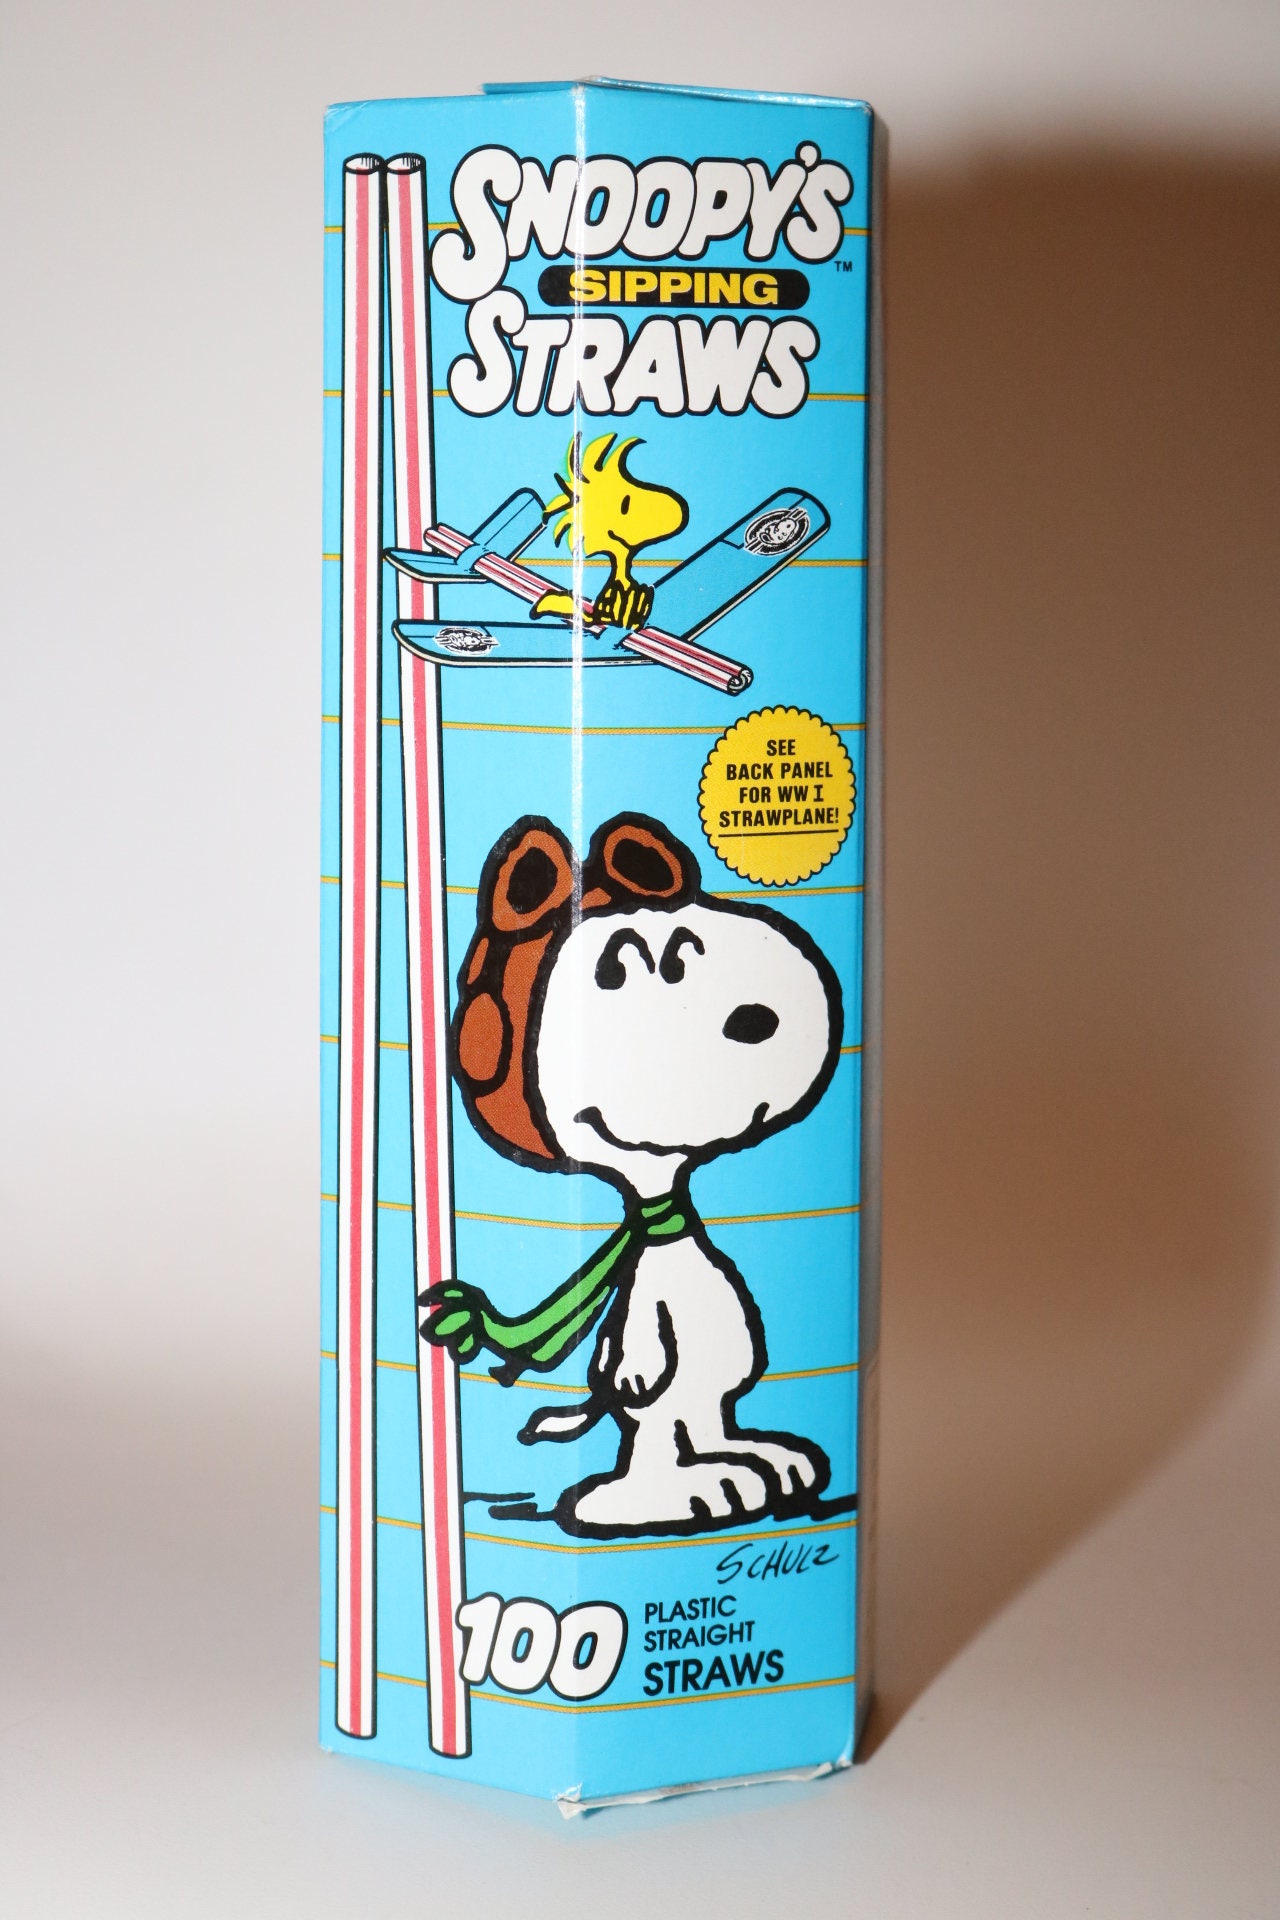 Snoopy Und Peanuts Woodstock Schlüsselanhänger aus Leder